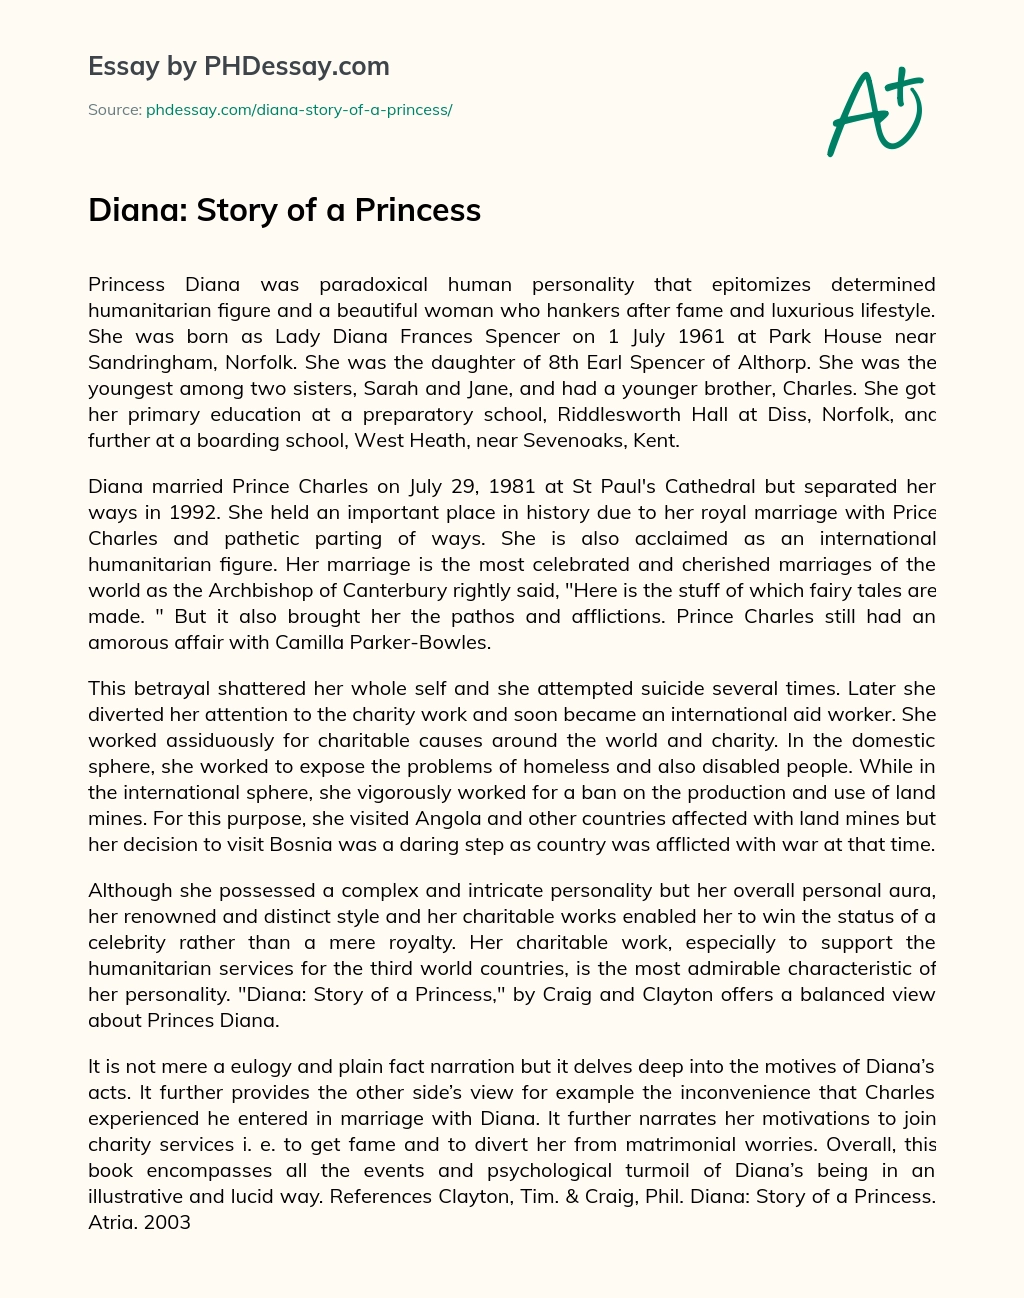 Diana: Story of a Princess essay